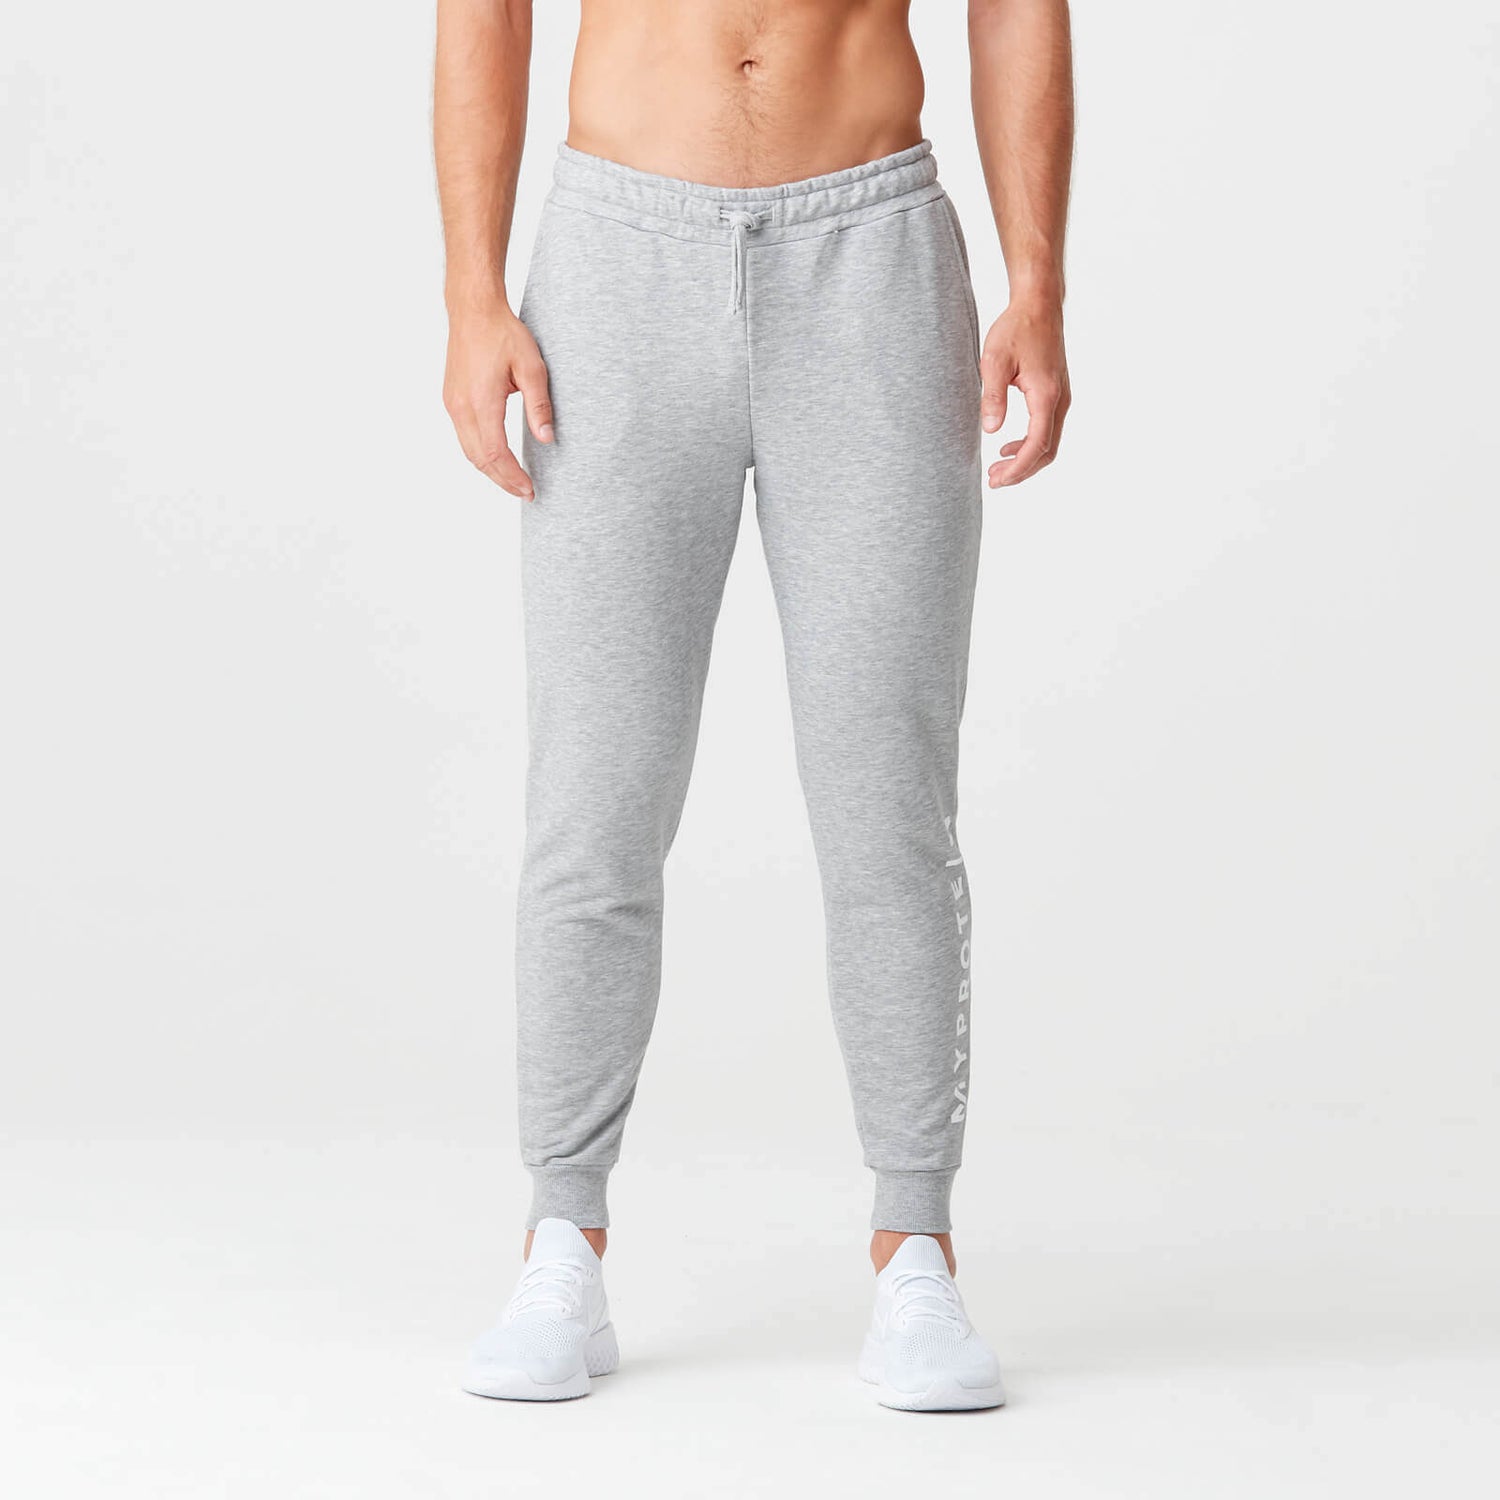 MP muške originalne jogger hlače - klasični sivi lapor - XS